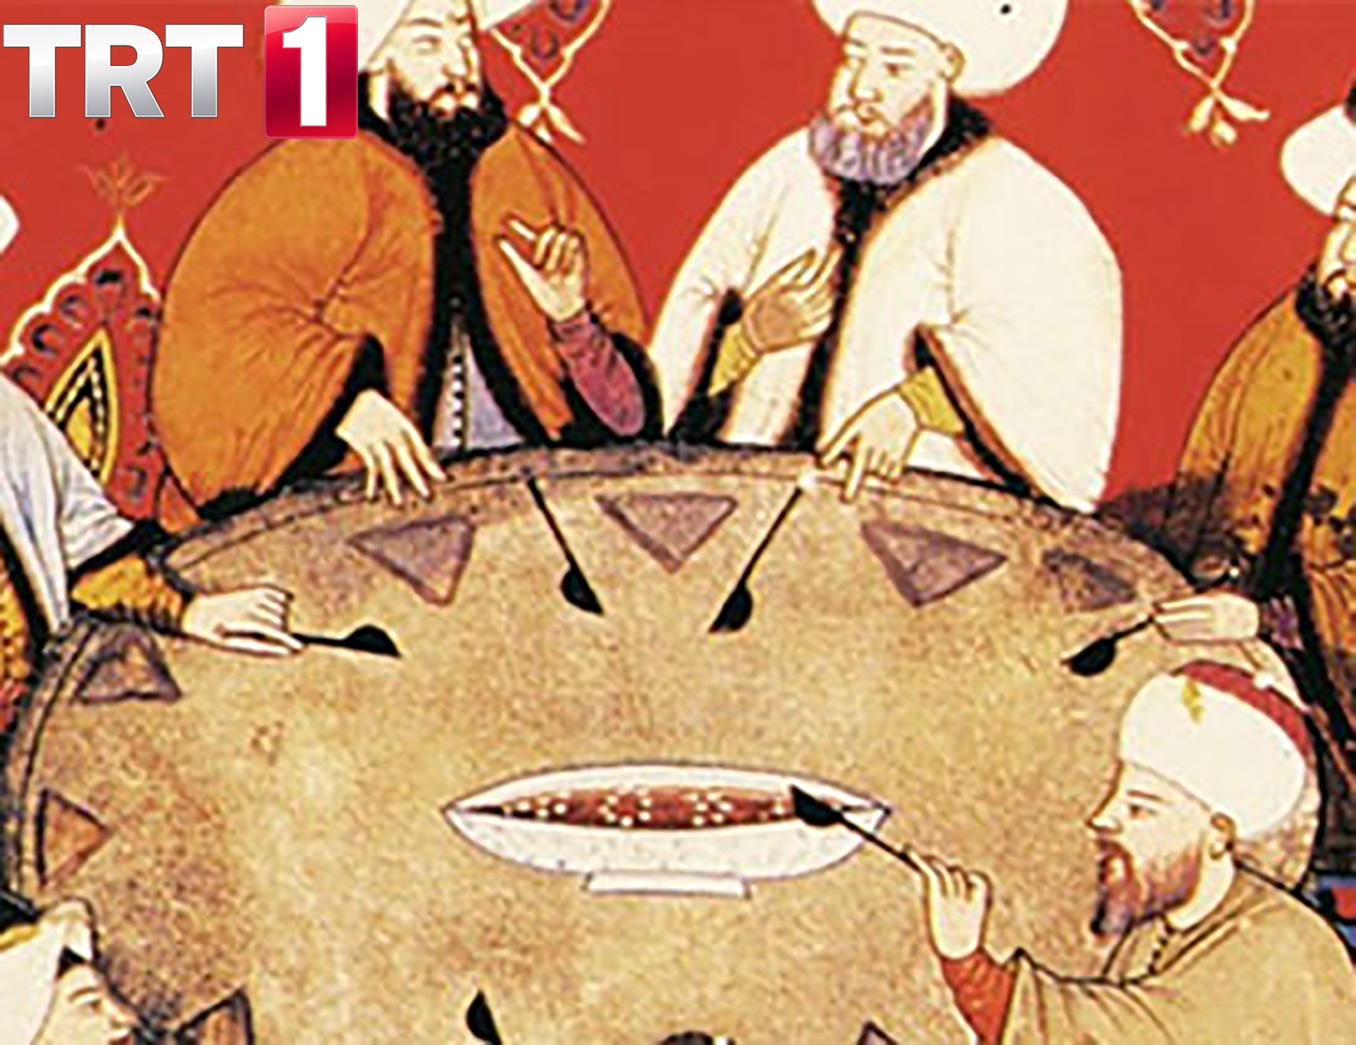 Osmanlı Sarayında Mutfak Kültürü ve Sofra Gelenekleri